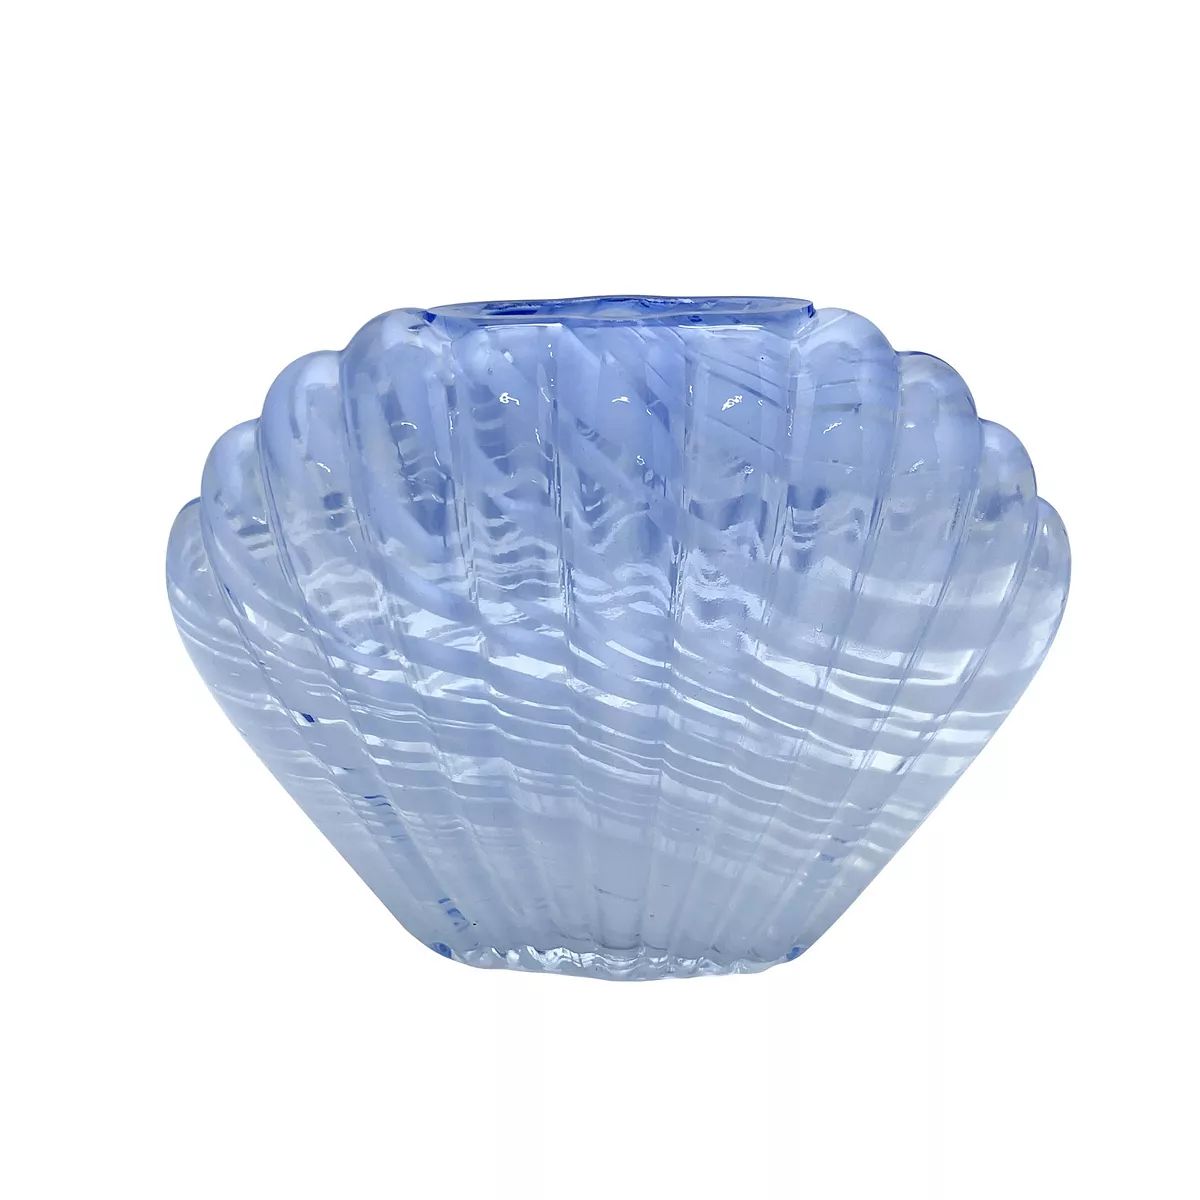 Sonoma Goods For Life® Blue Swirled Glass Seashell Vase Table Decor | Kohl's